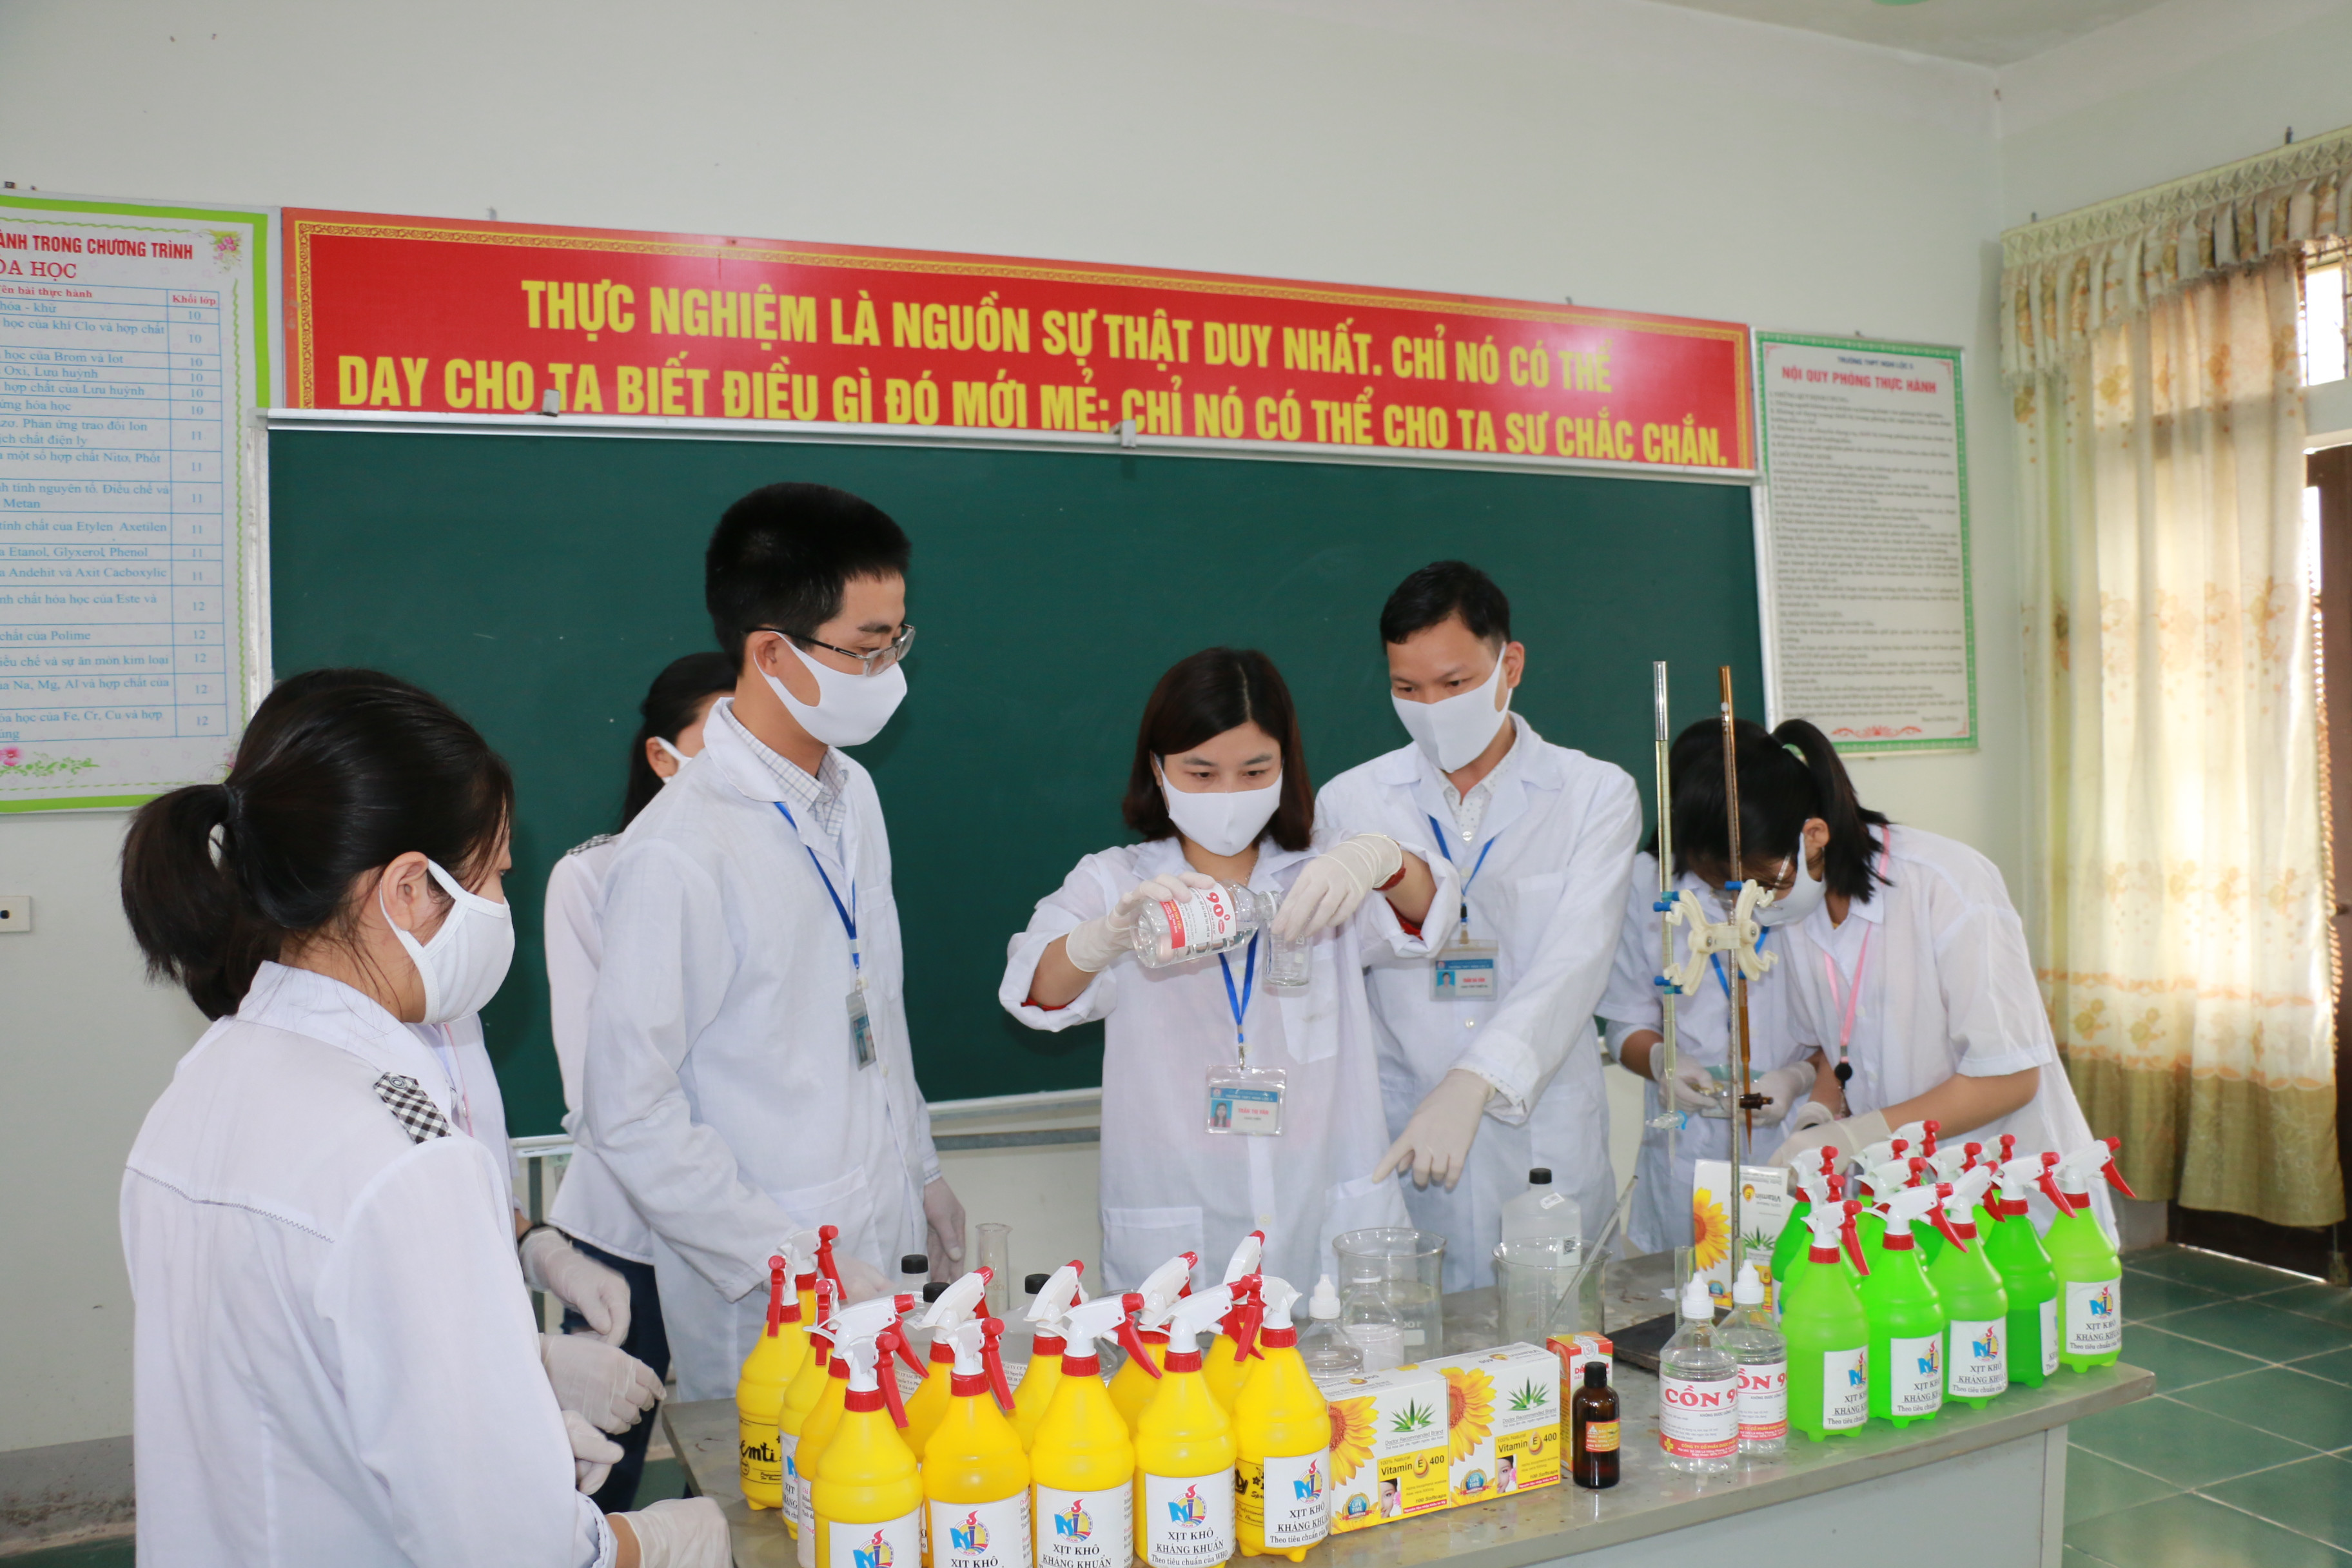 Giáo viên và học sinh Nghệ An tự sản xuất nước rửa tay sát khuẩn để sử dụng trong các nhà trường. Ảnh: Mỹ Hà